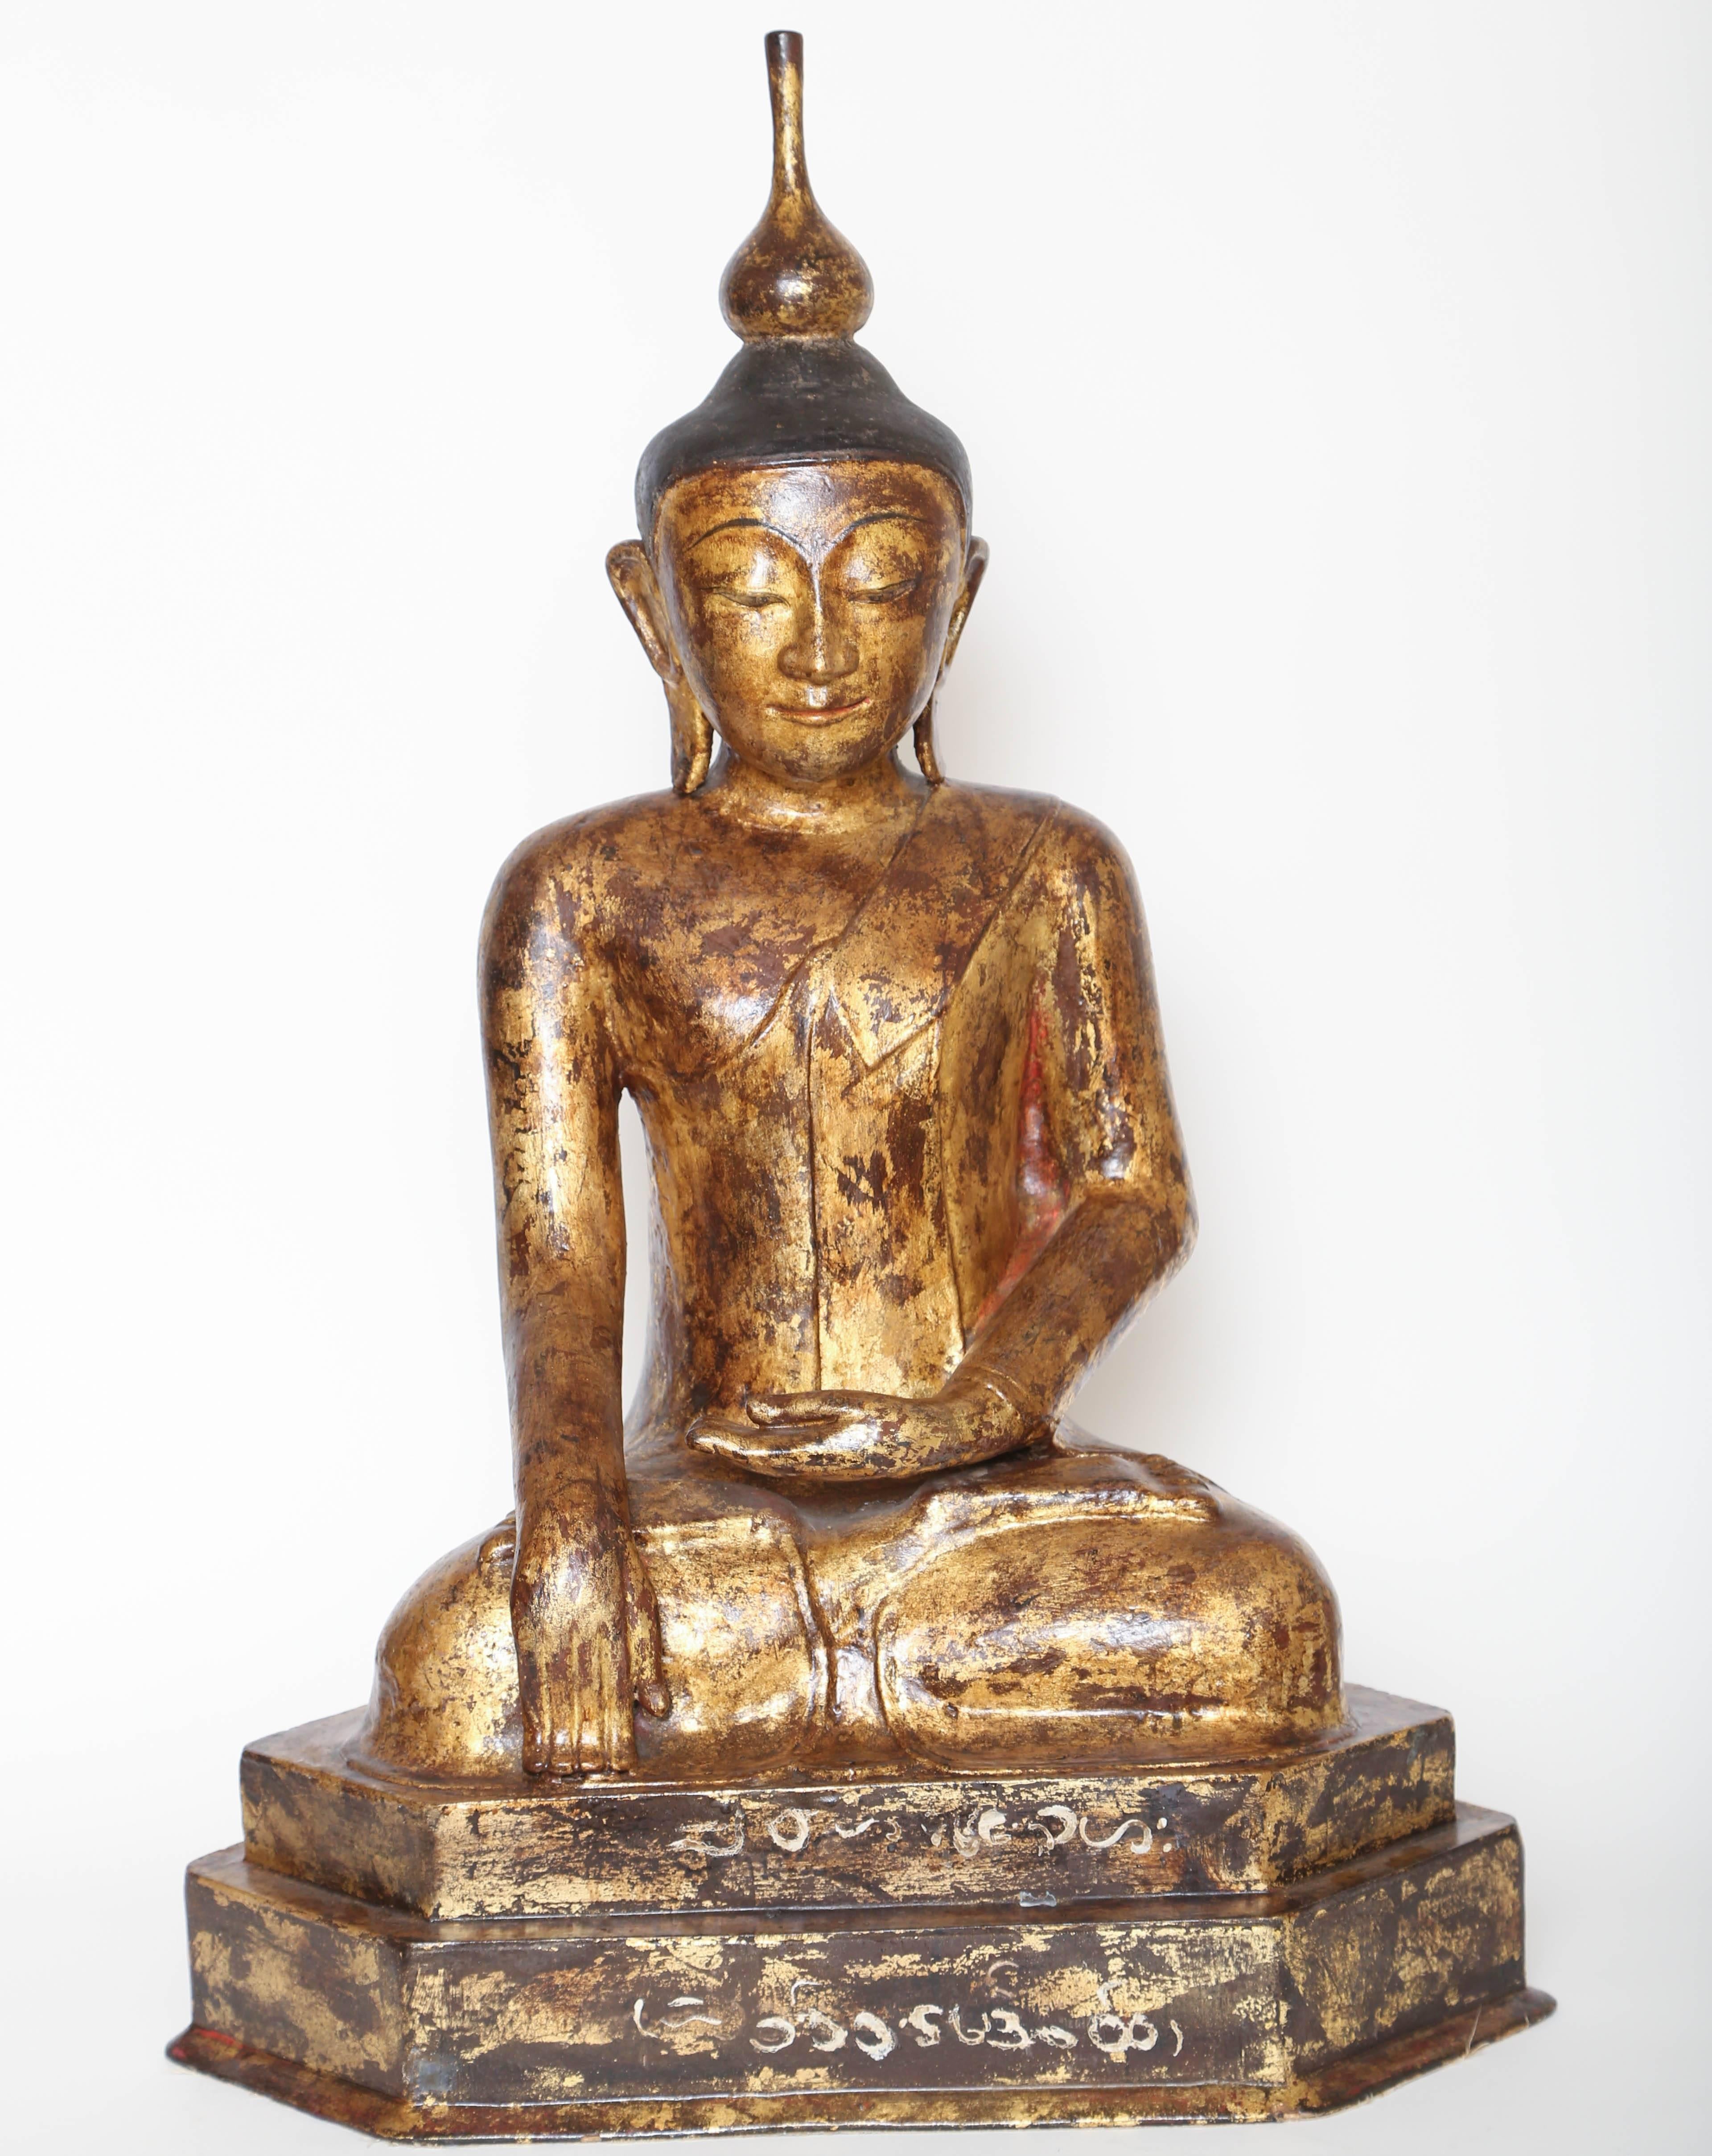 Grand bouddha doré en papier mâché, décoratif et inhabituel.